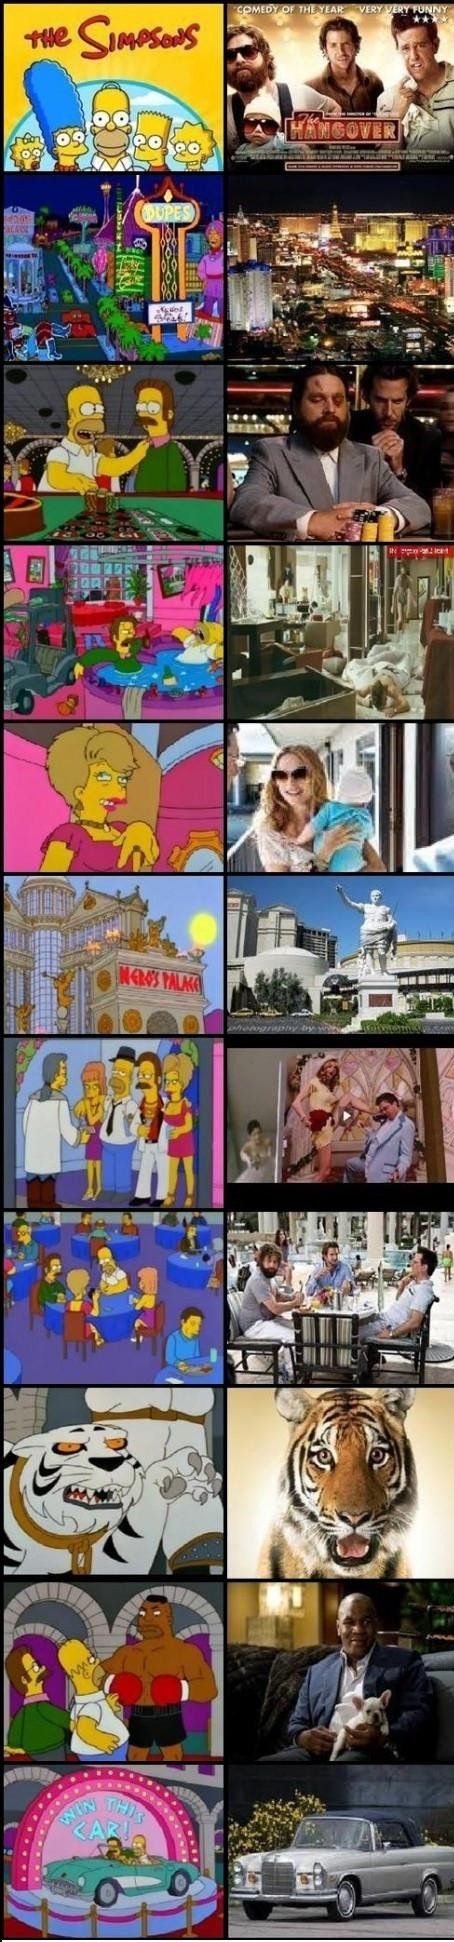 Les Simpson 10 Elements De Culture Populaire Inspires Par La Serie Le Huffpost